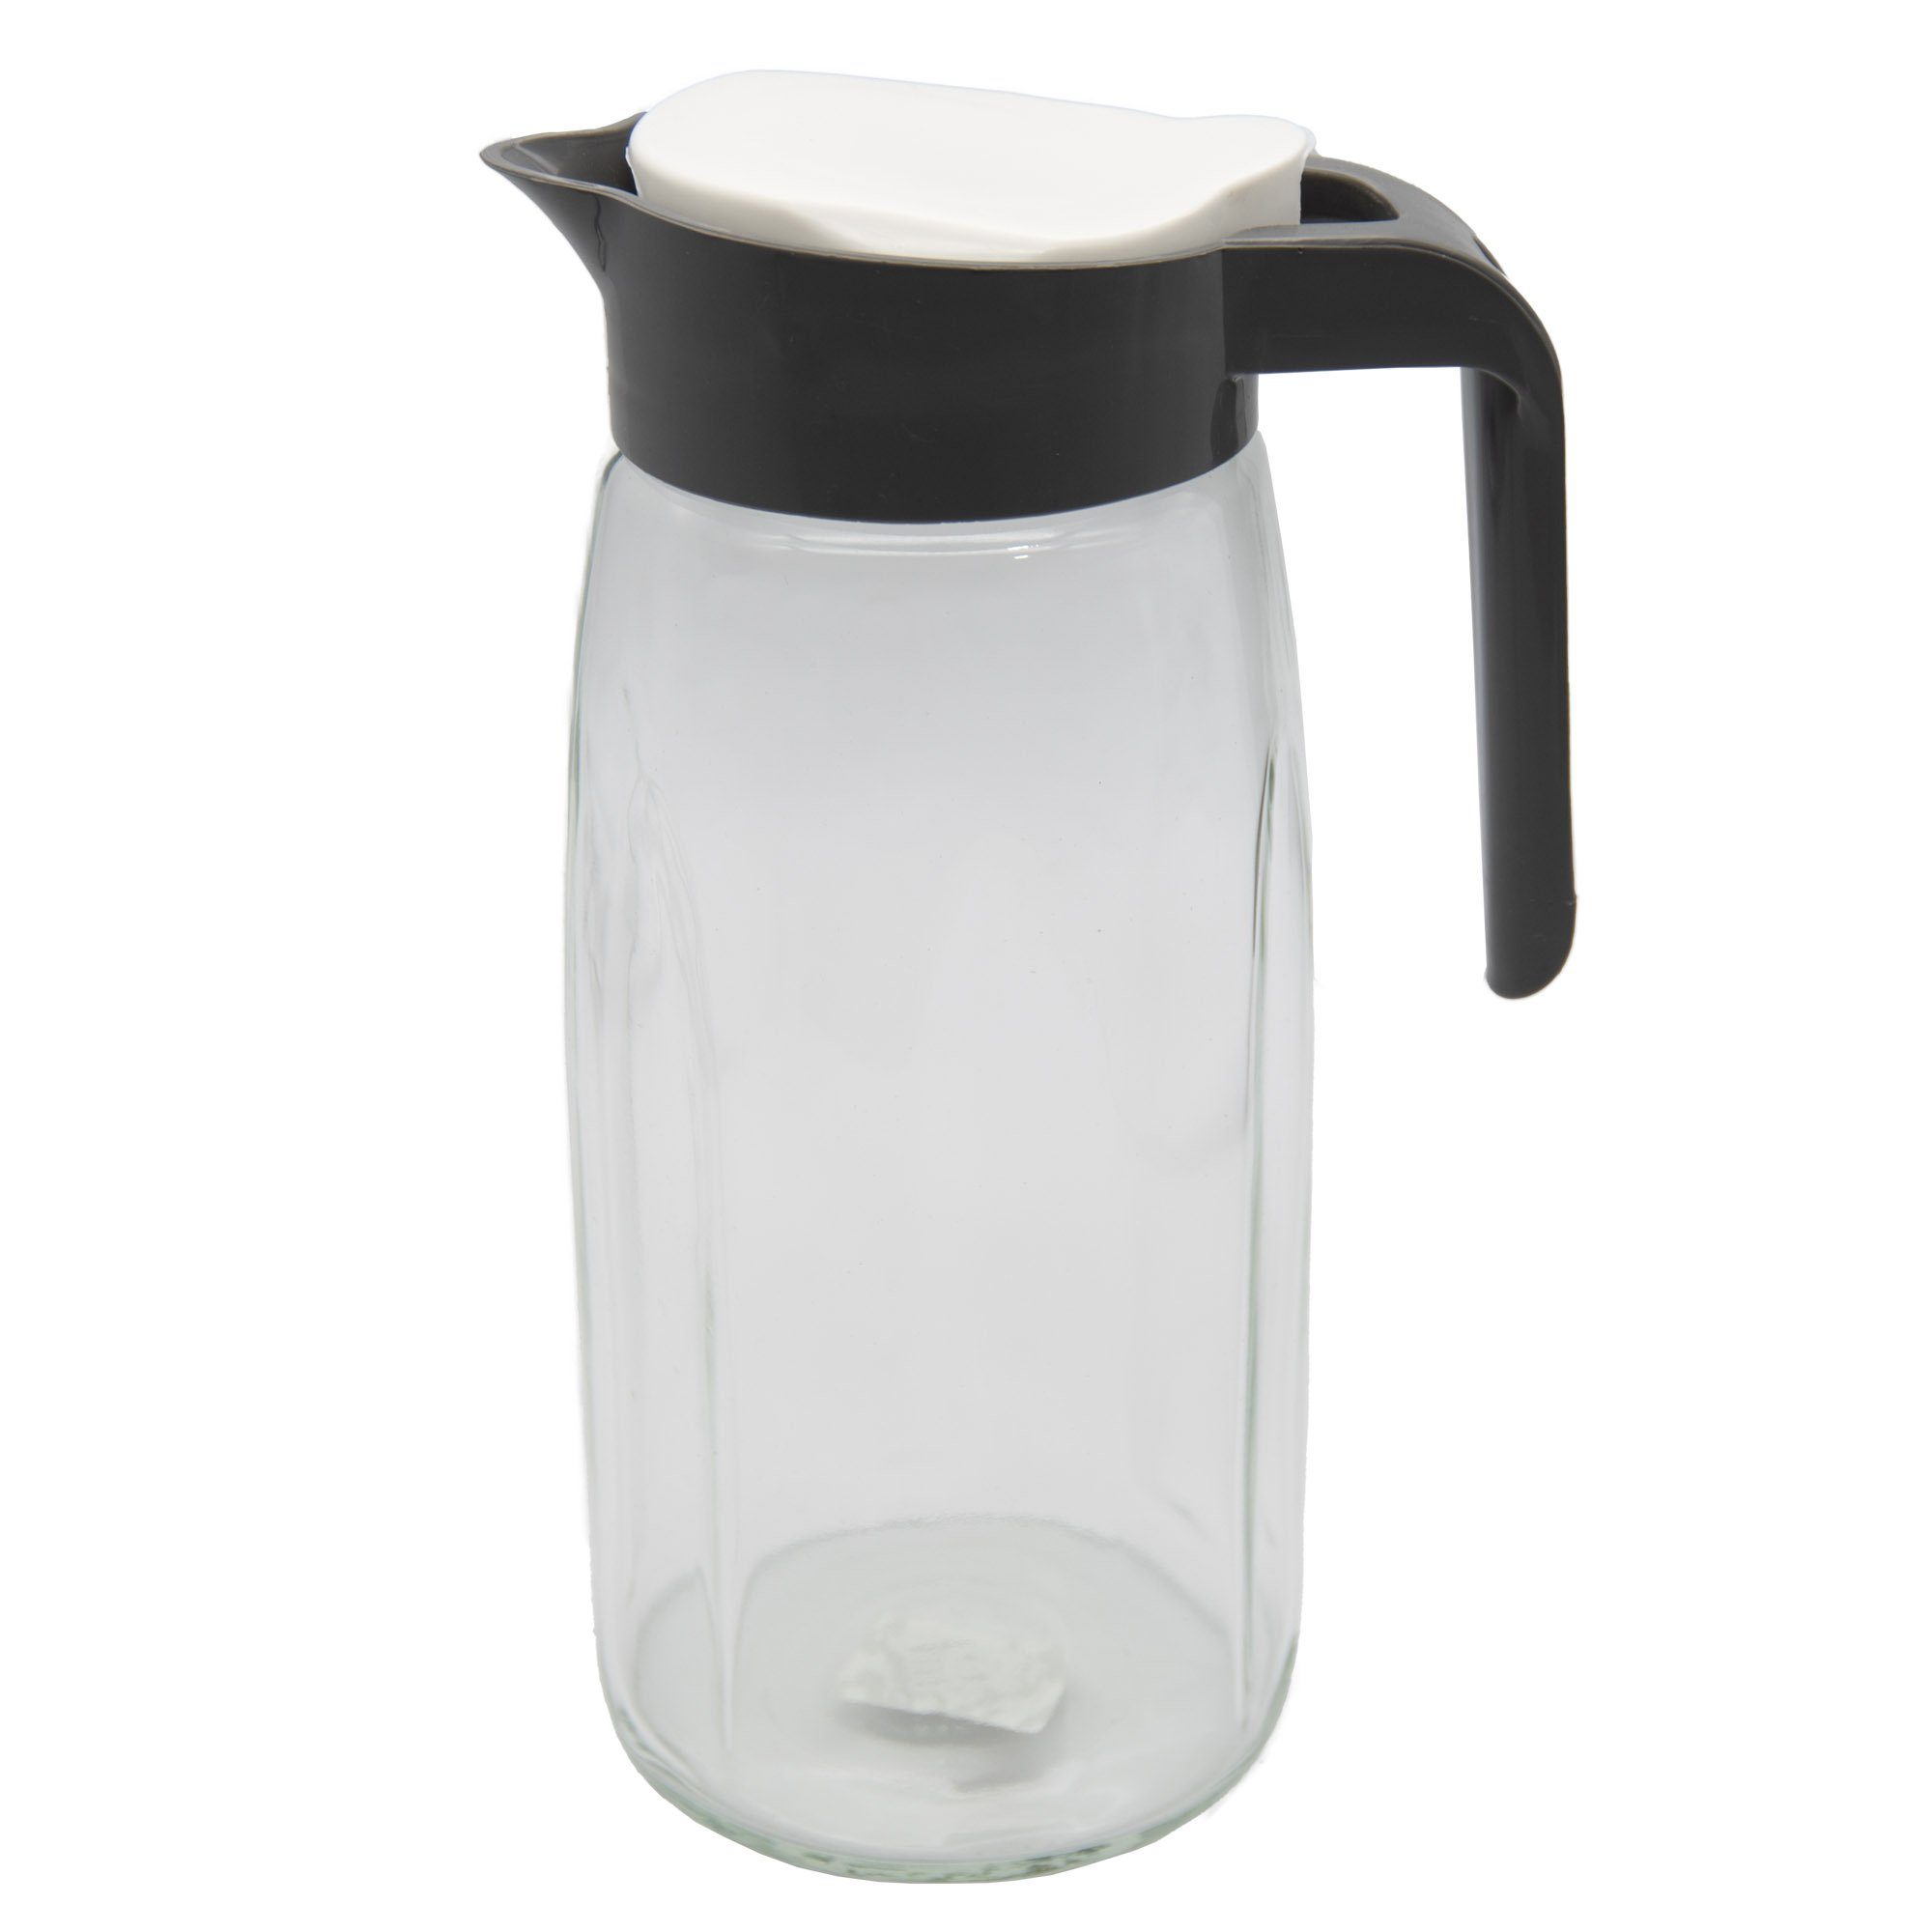 Glaskaraffe Wasserkaraffe, Saftkrug Wasserkrug Deckel, Krug Glaskrug, conkor Karaffe Grau Glas 1,45L Kanne,